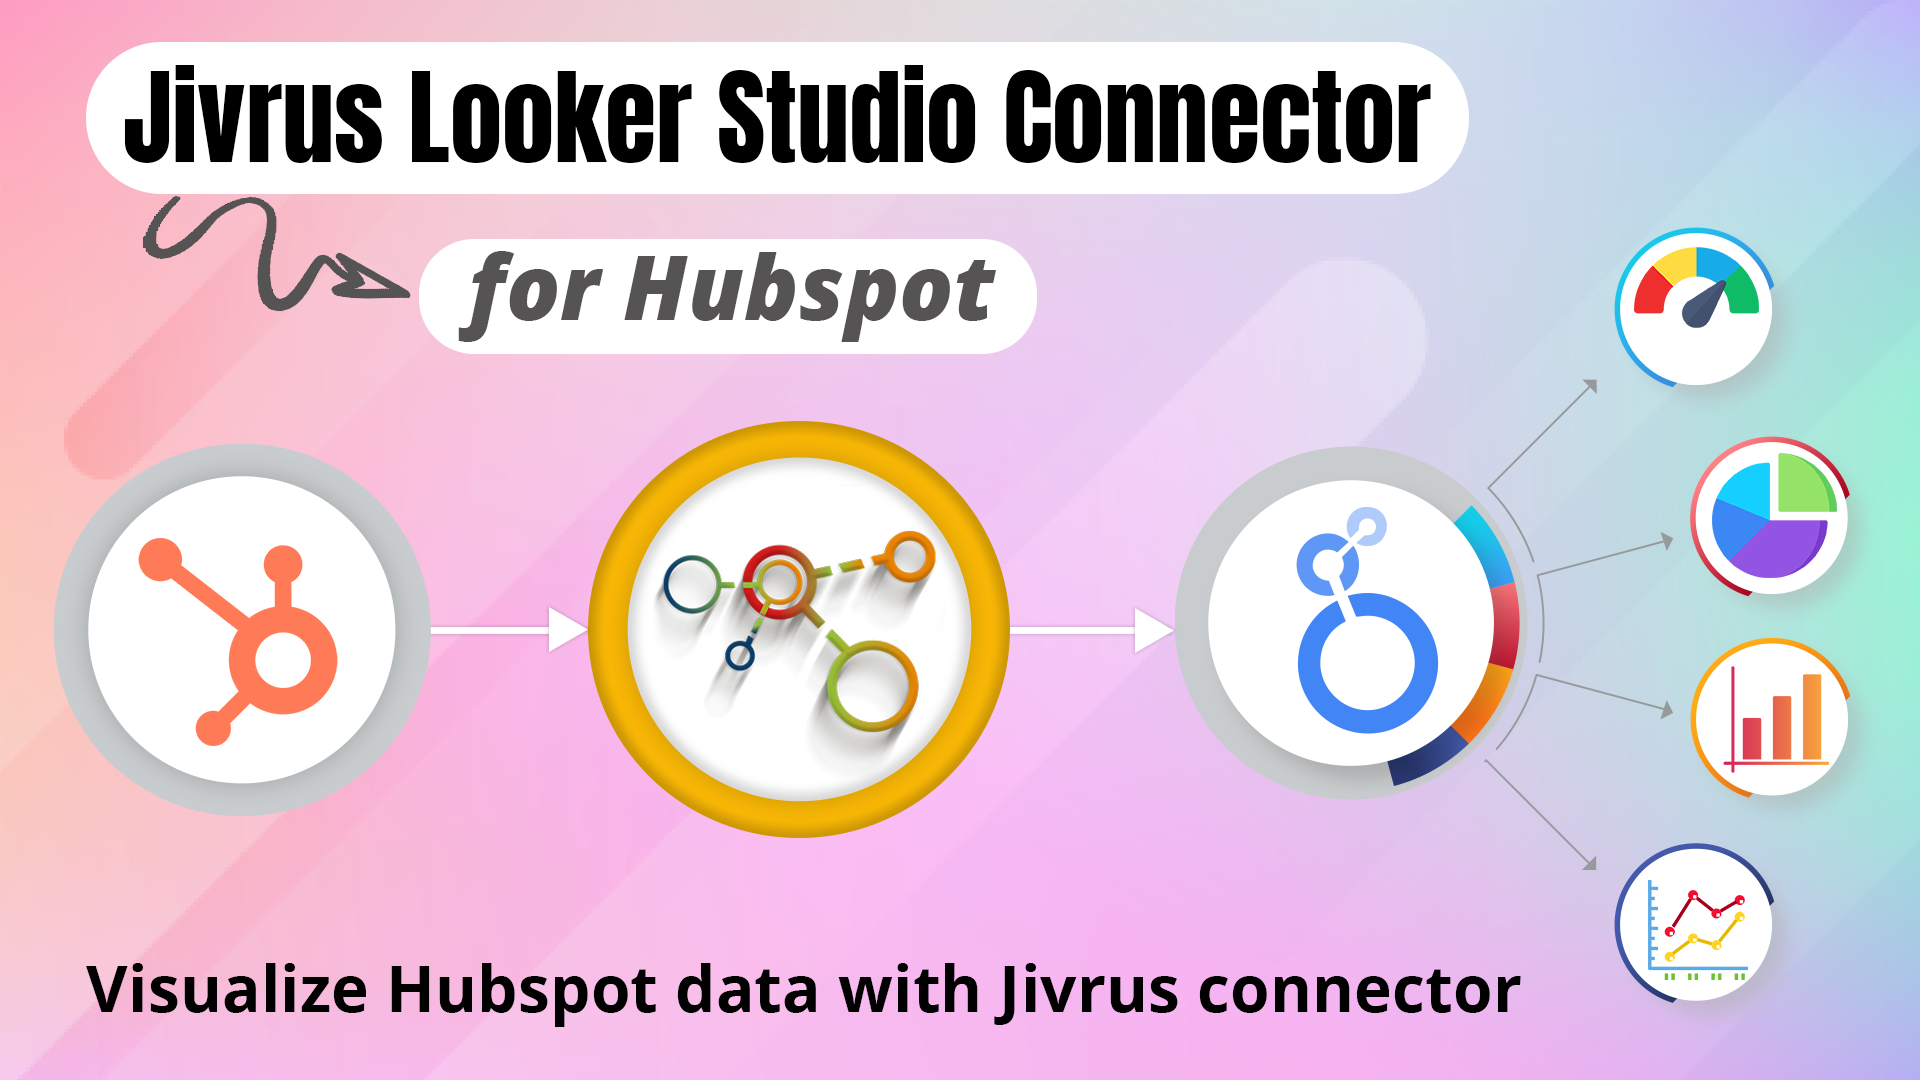 Jivrus Looker Studio Connector for HubSpot